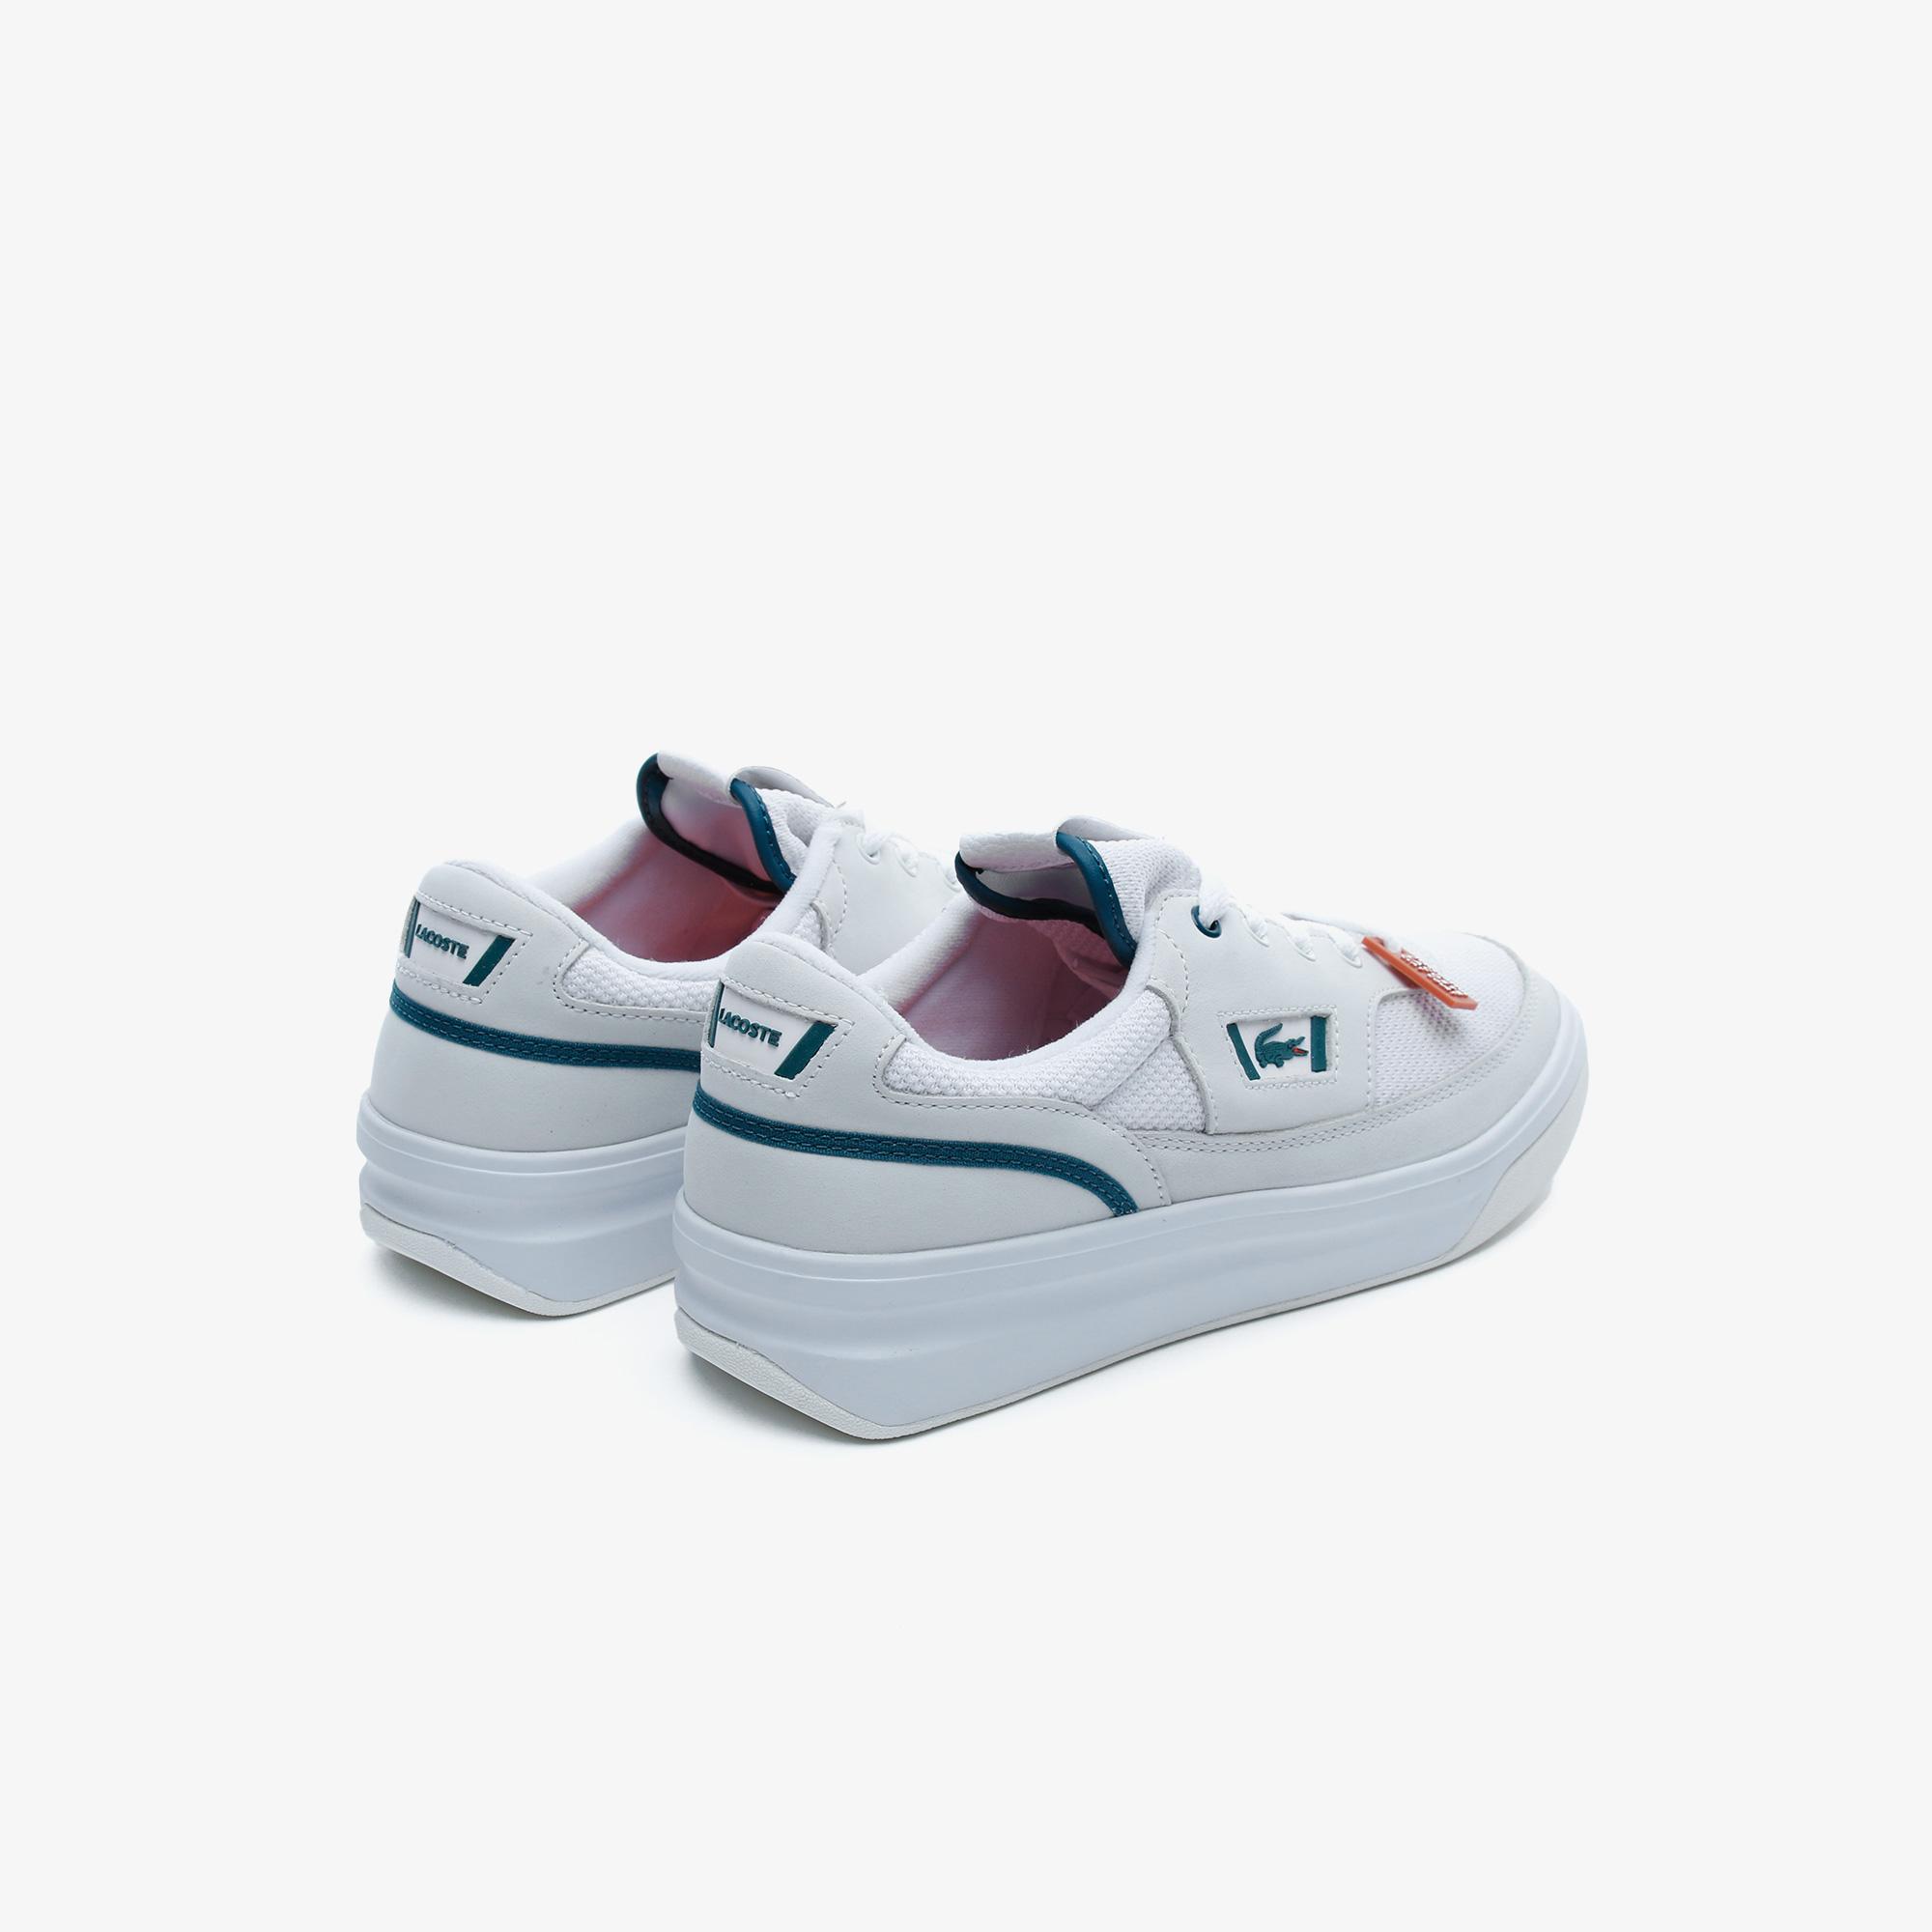 Lacoste G80 Rg 120 1 Sfa Wht/Dk Grn Kadın Beyaz - Koyu Yeşil Deri Sneaker. 4